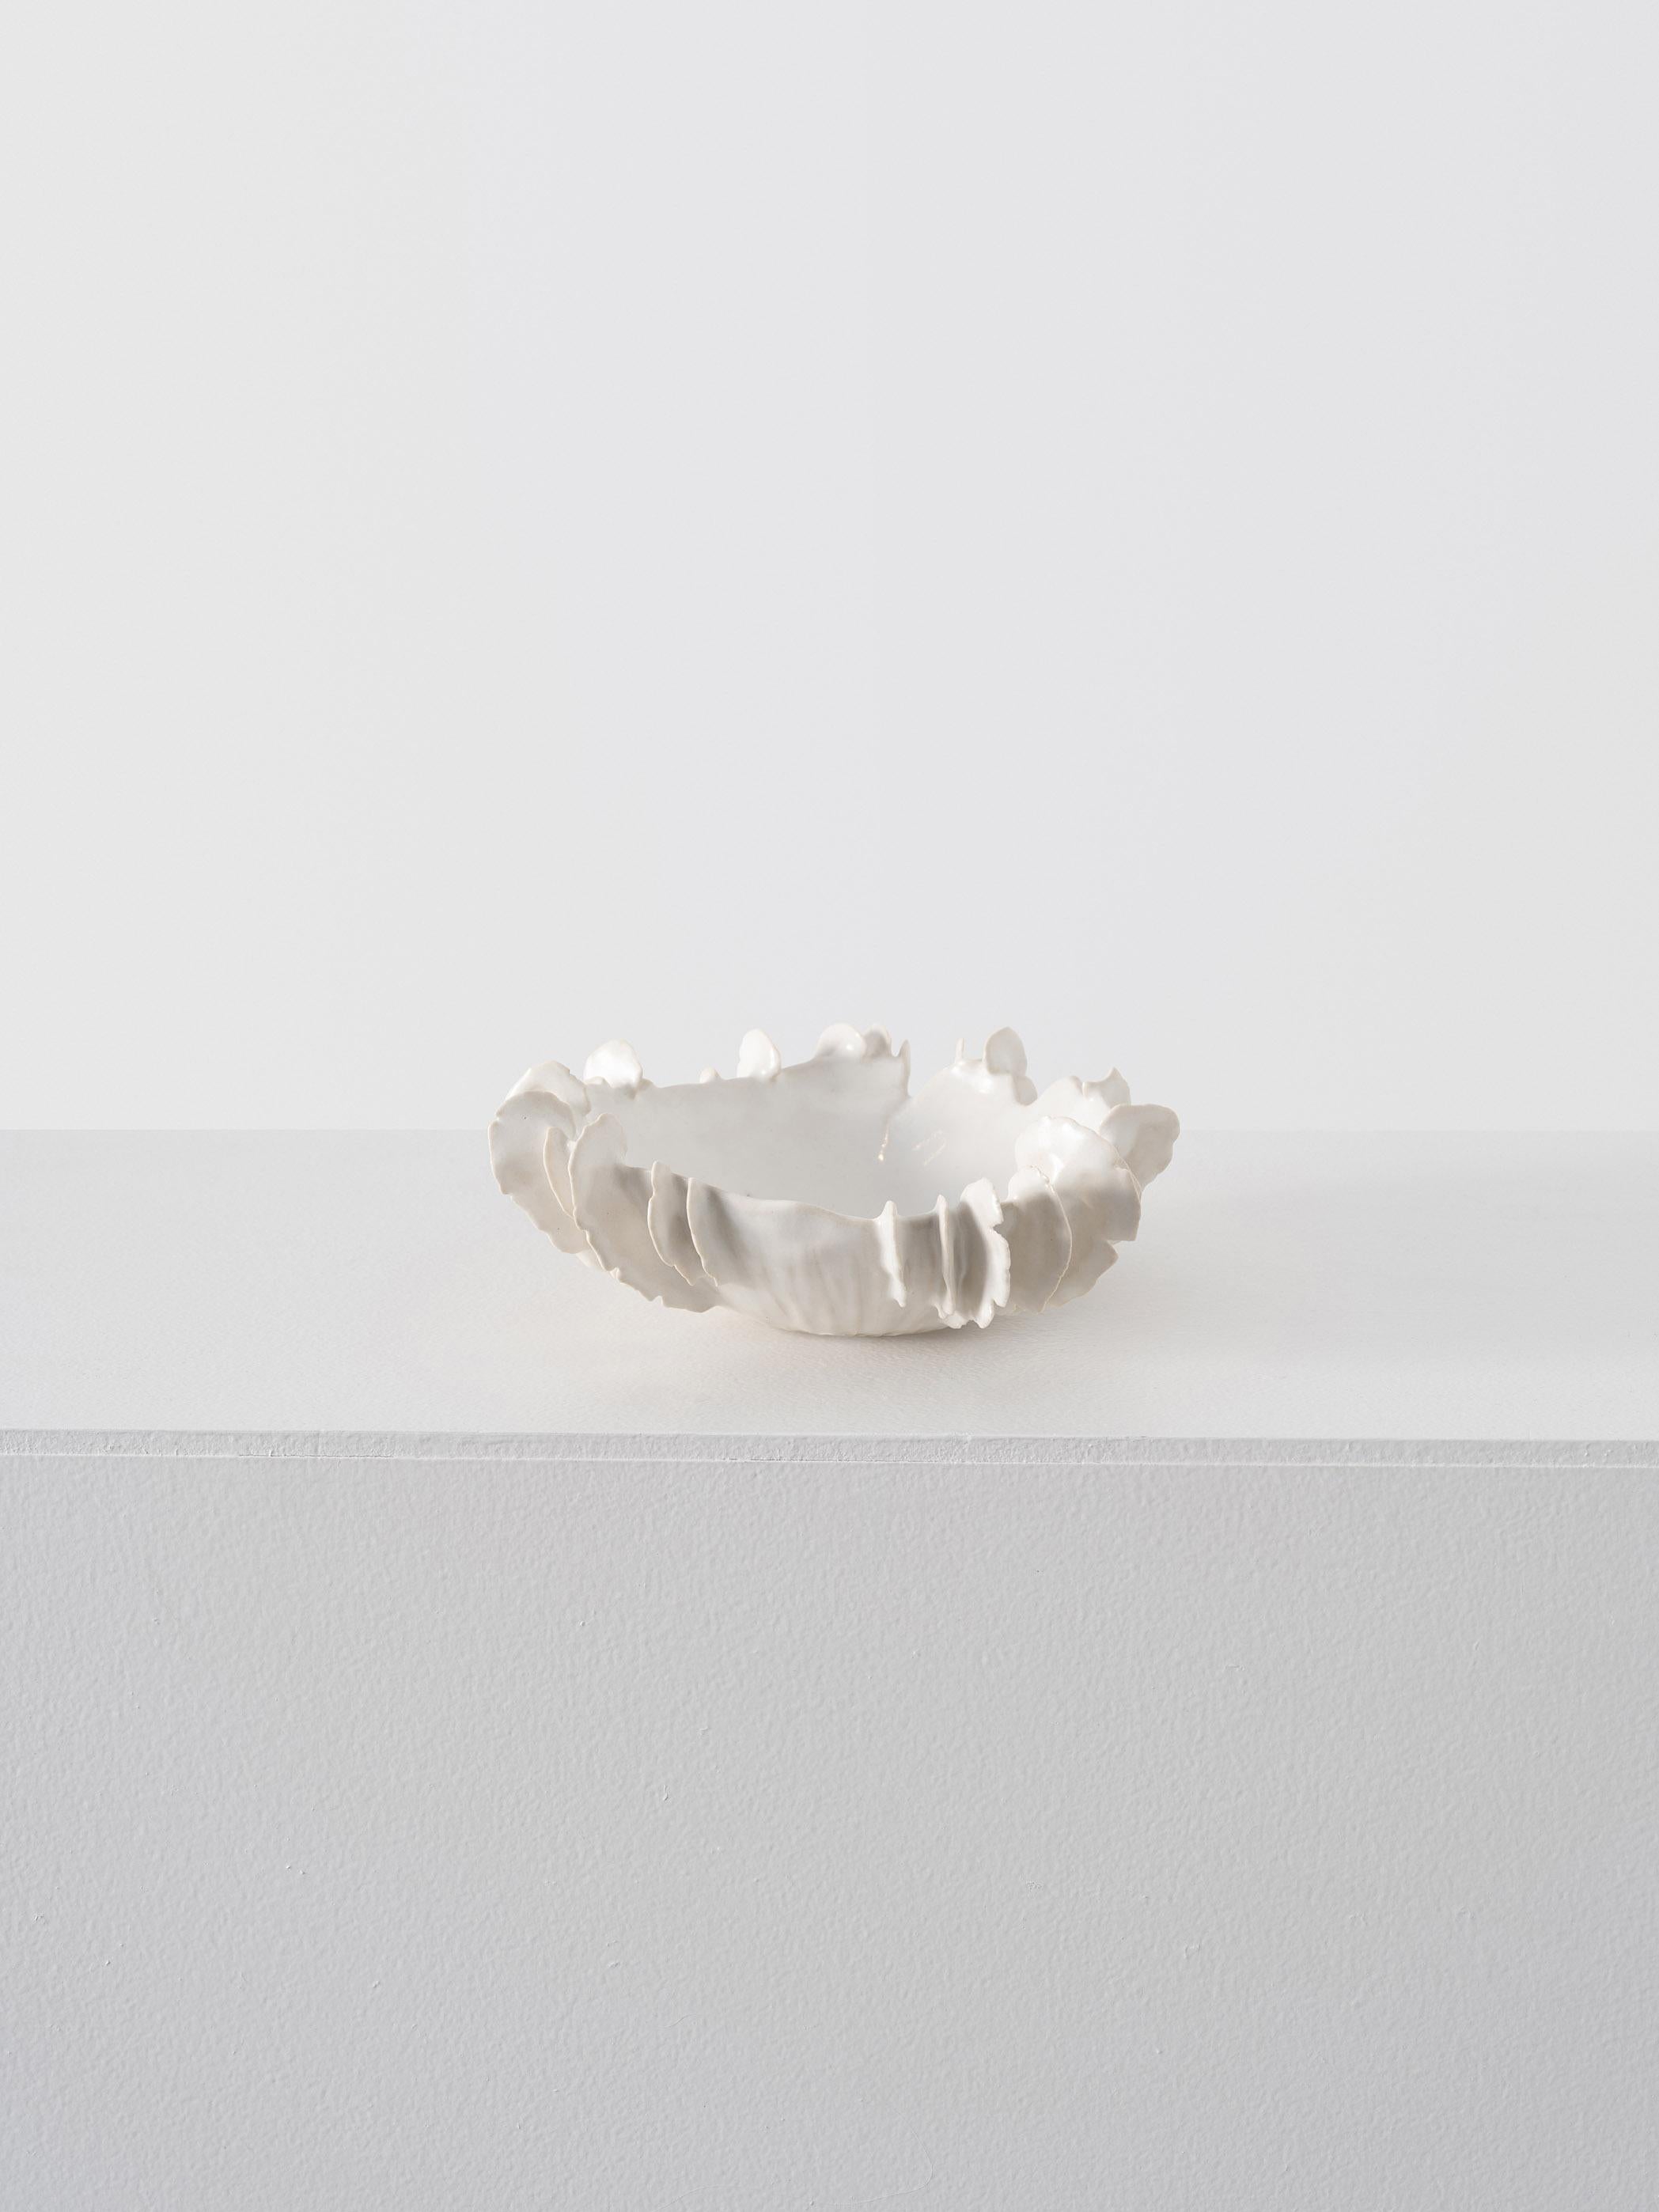 Trish DeMasi.
Lamella-Schale, 2022.
Glasierte Keramik mit Glaseinlage.
Maße: 3 x 7 x 7 Zoll.